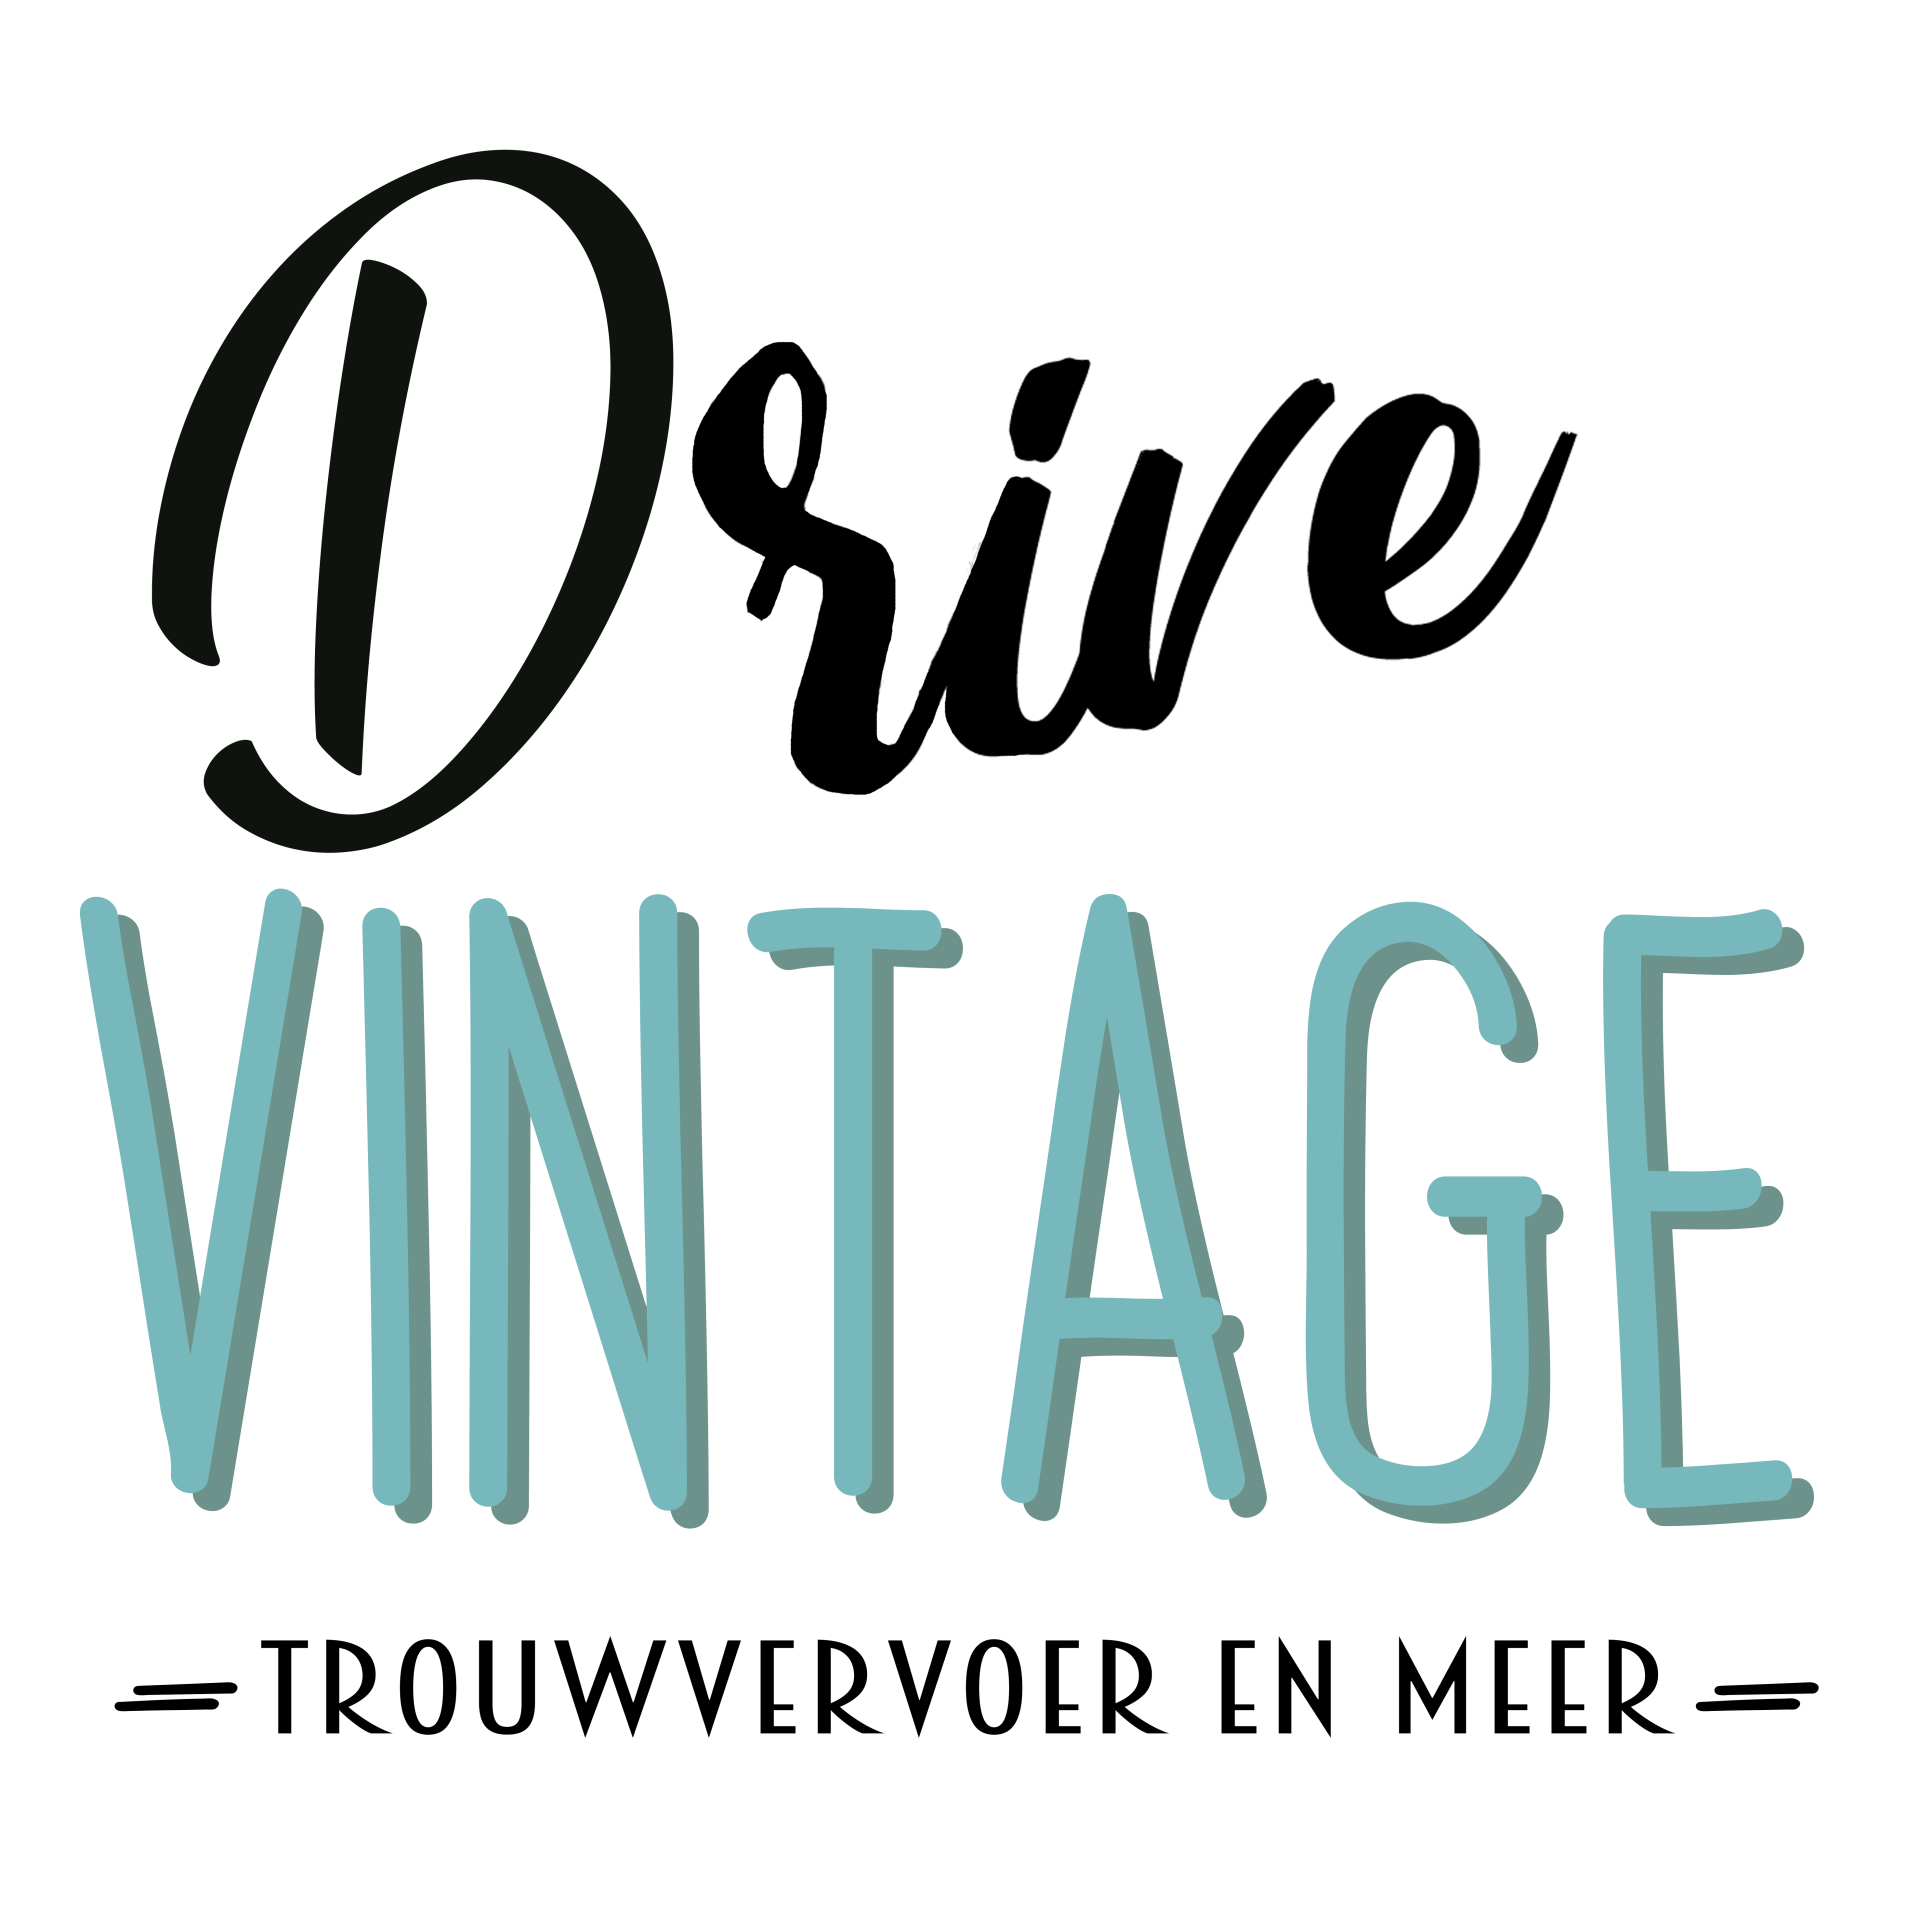 Drive Vintage Volkswagen T1 trouwvervoer huren Noord Holland